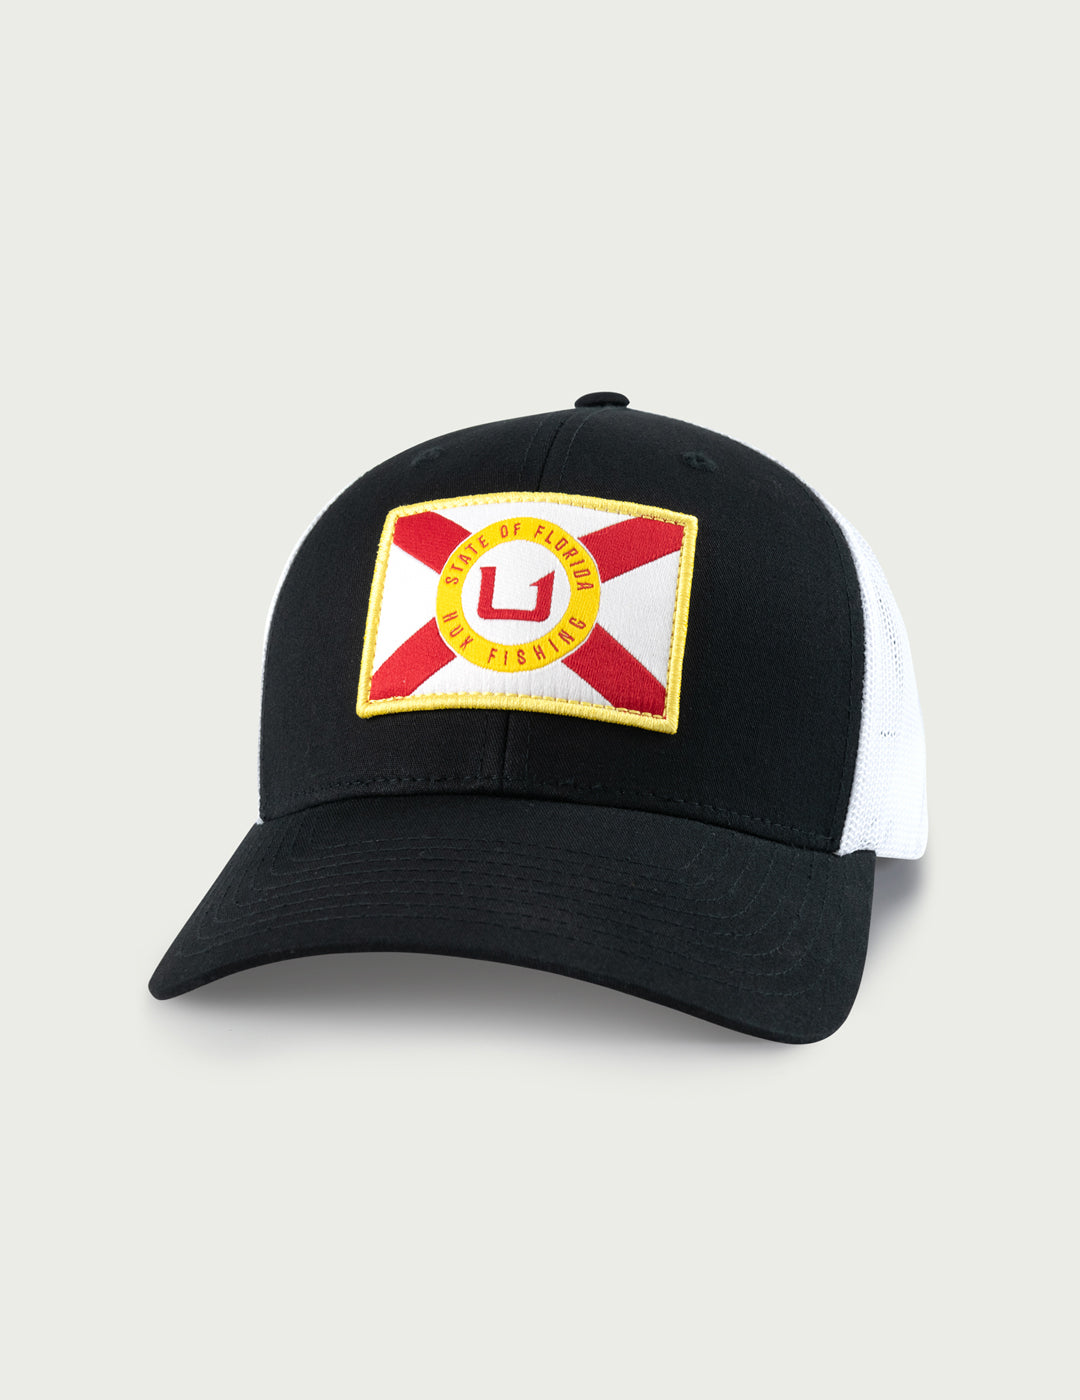 Florida State Trucker Hat